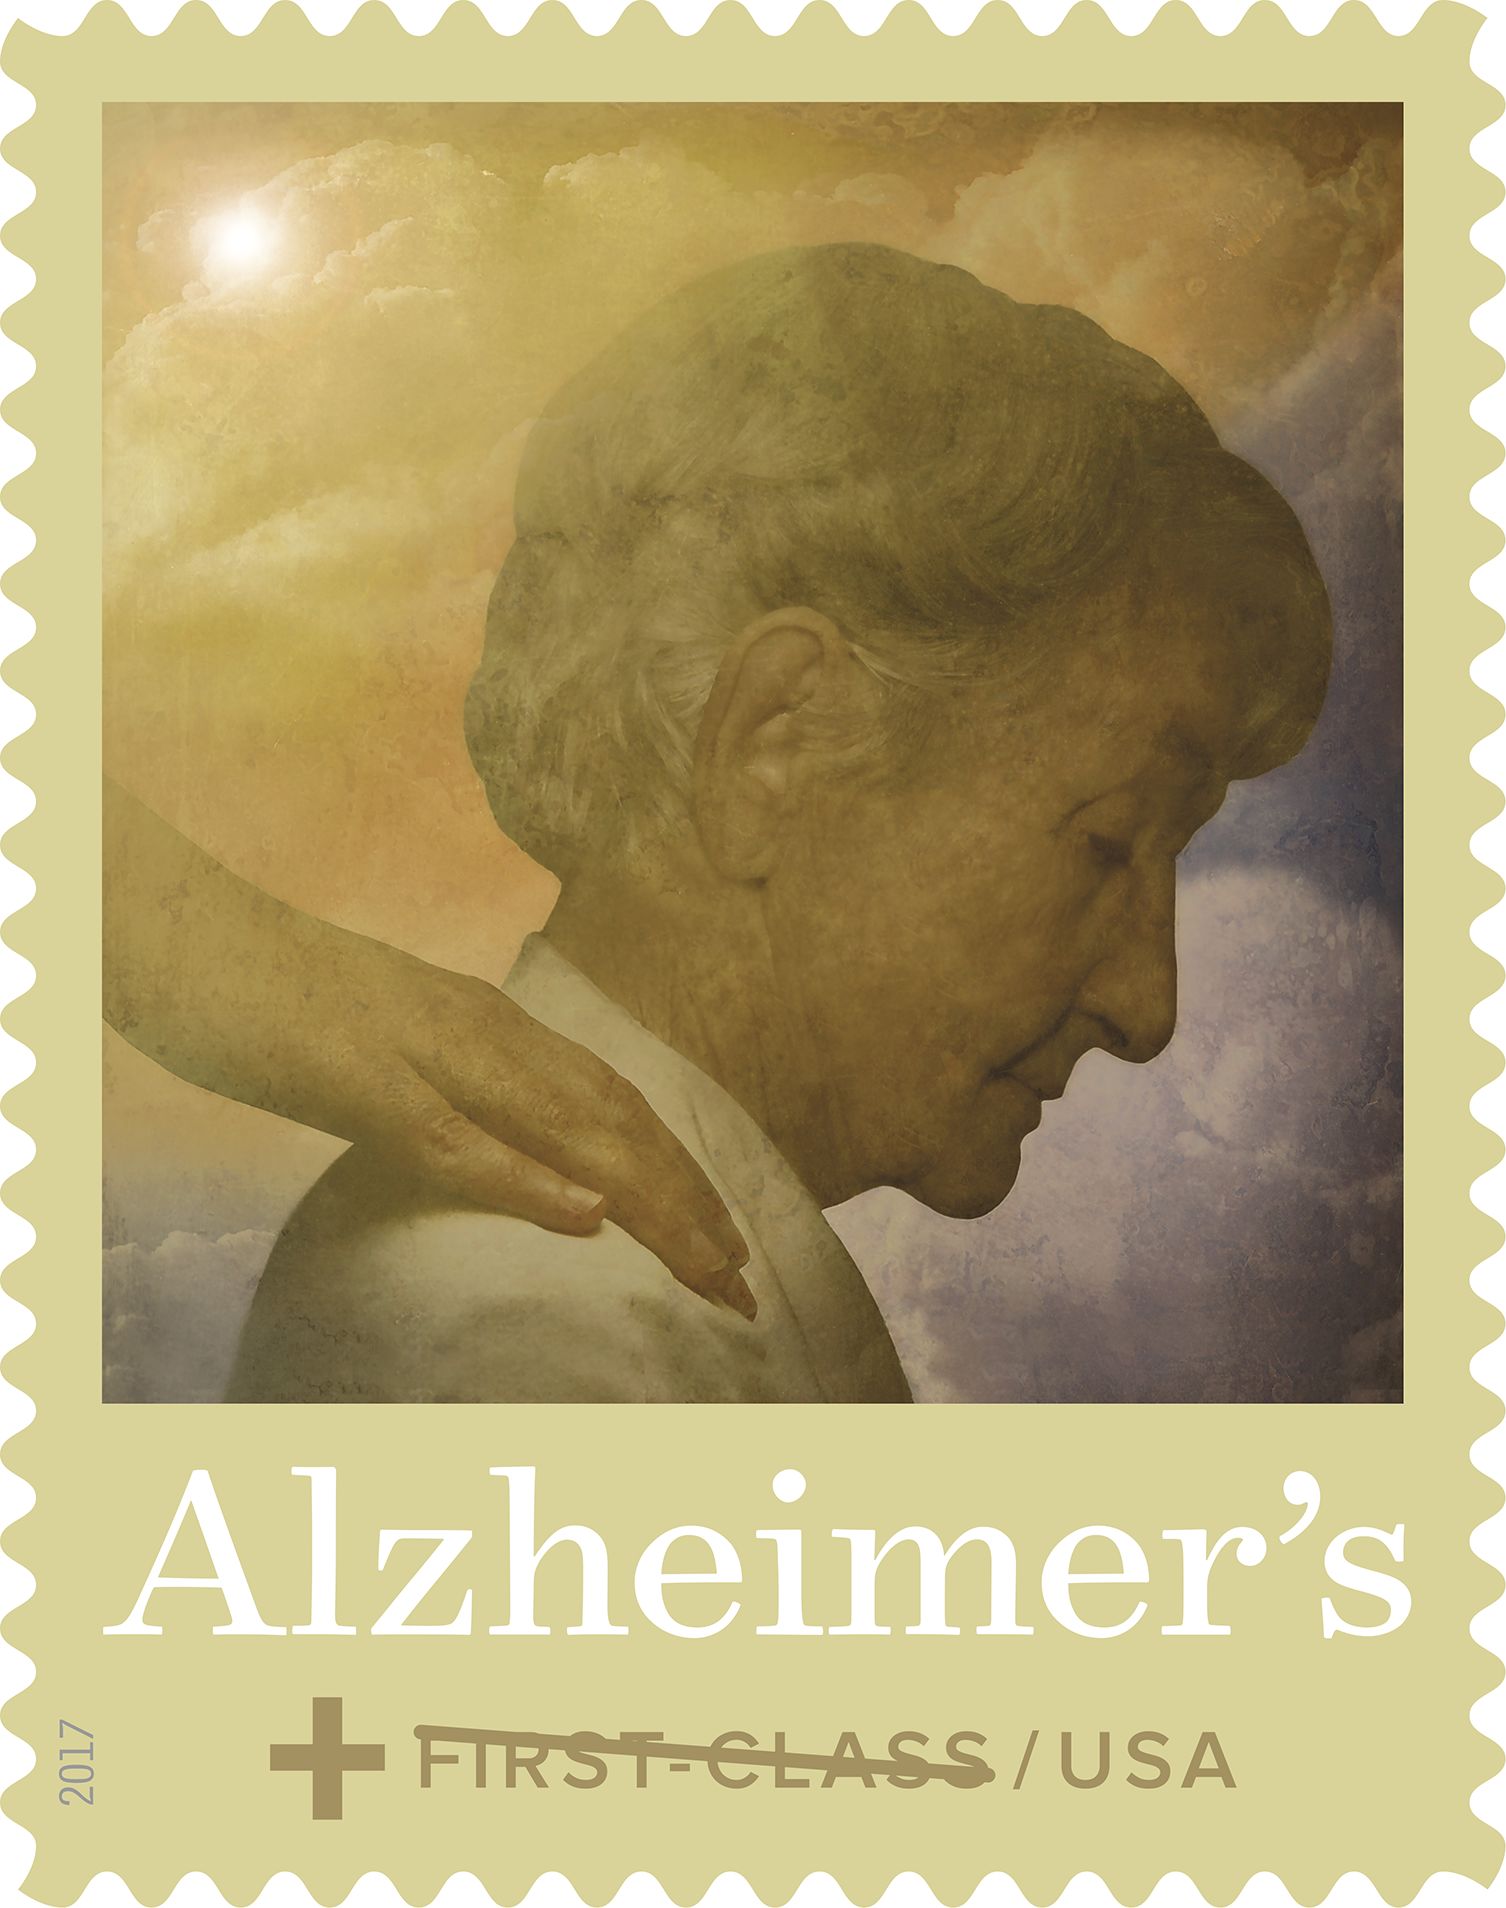 Alzheimer semipostal fundraising Forever stamp